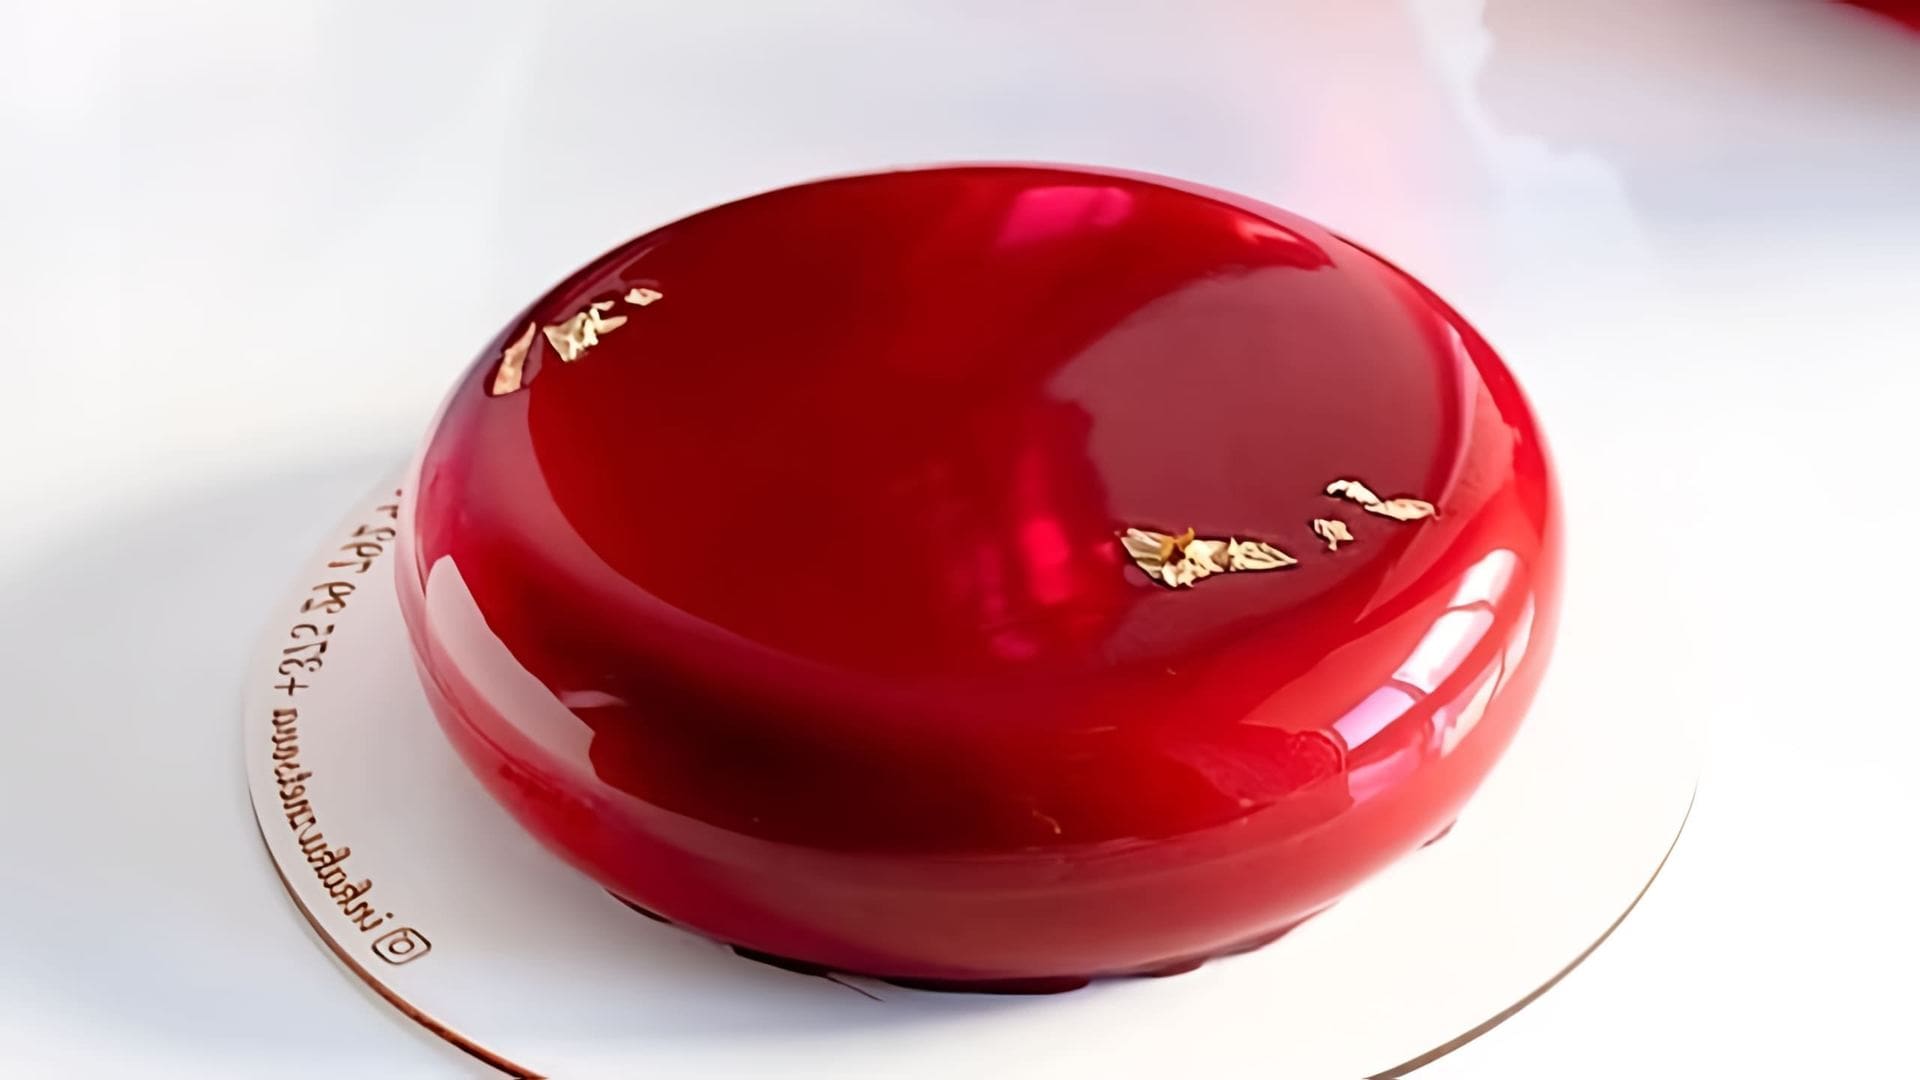 В этом видео демонстрируется рецепт муссового торта "Шоколад-вишня" с хрустящим слоем